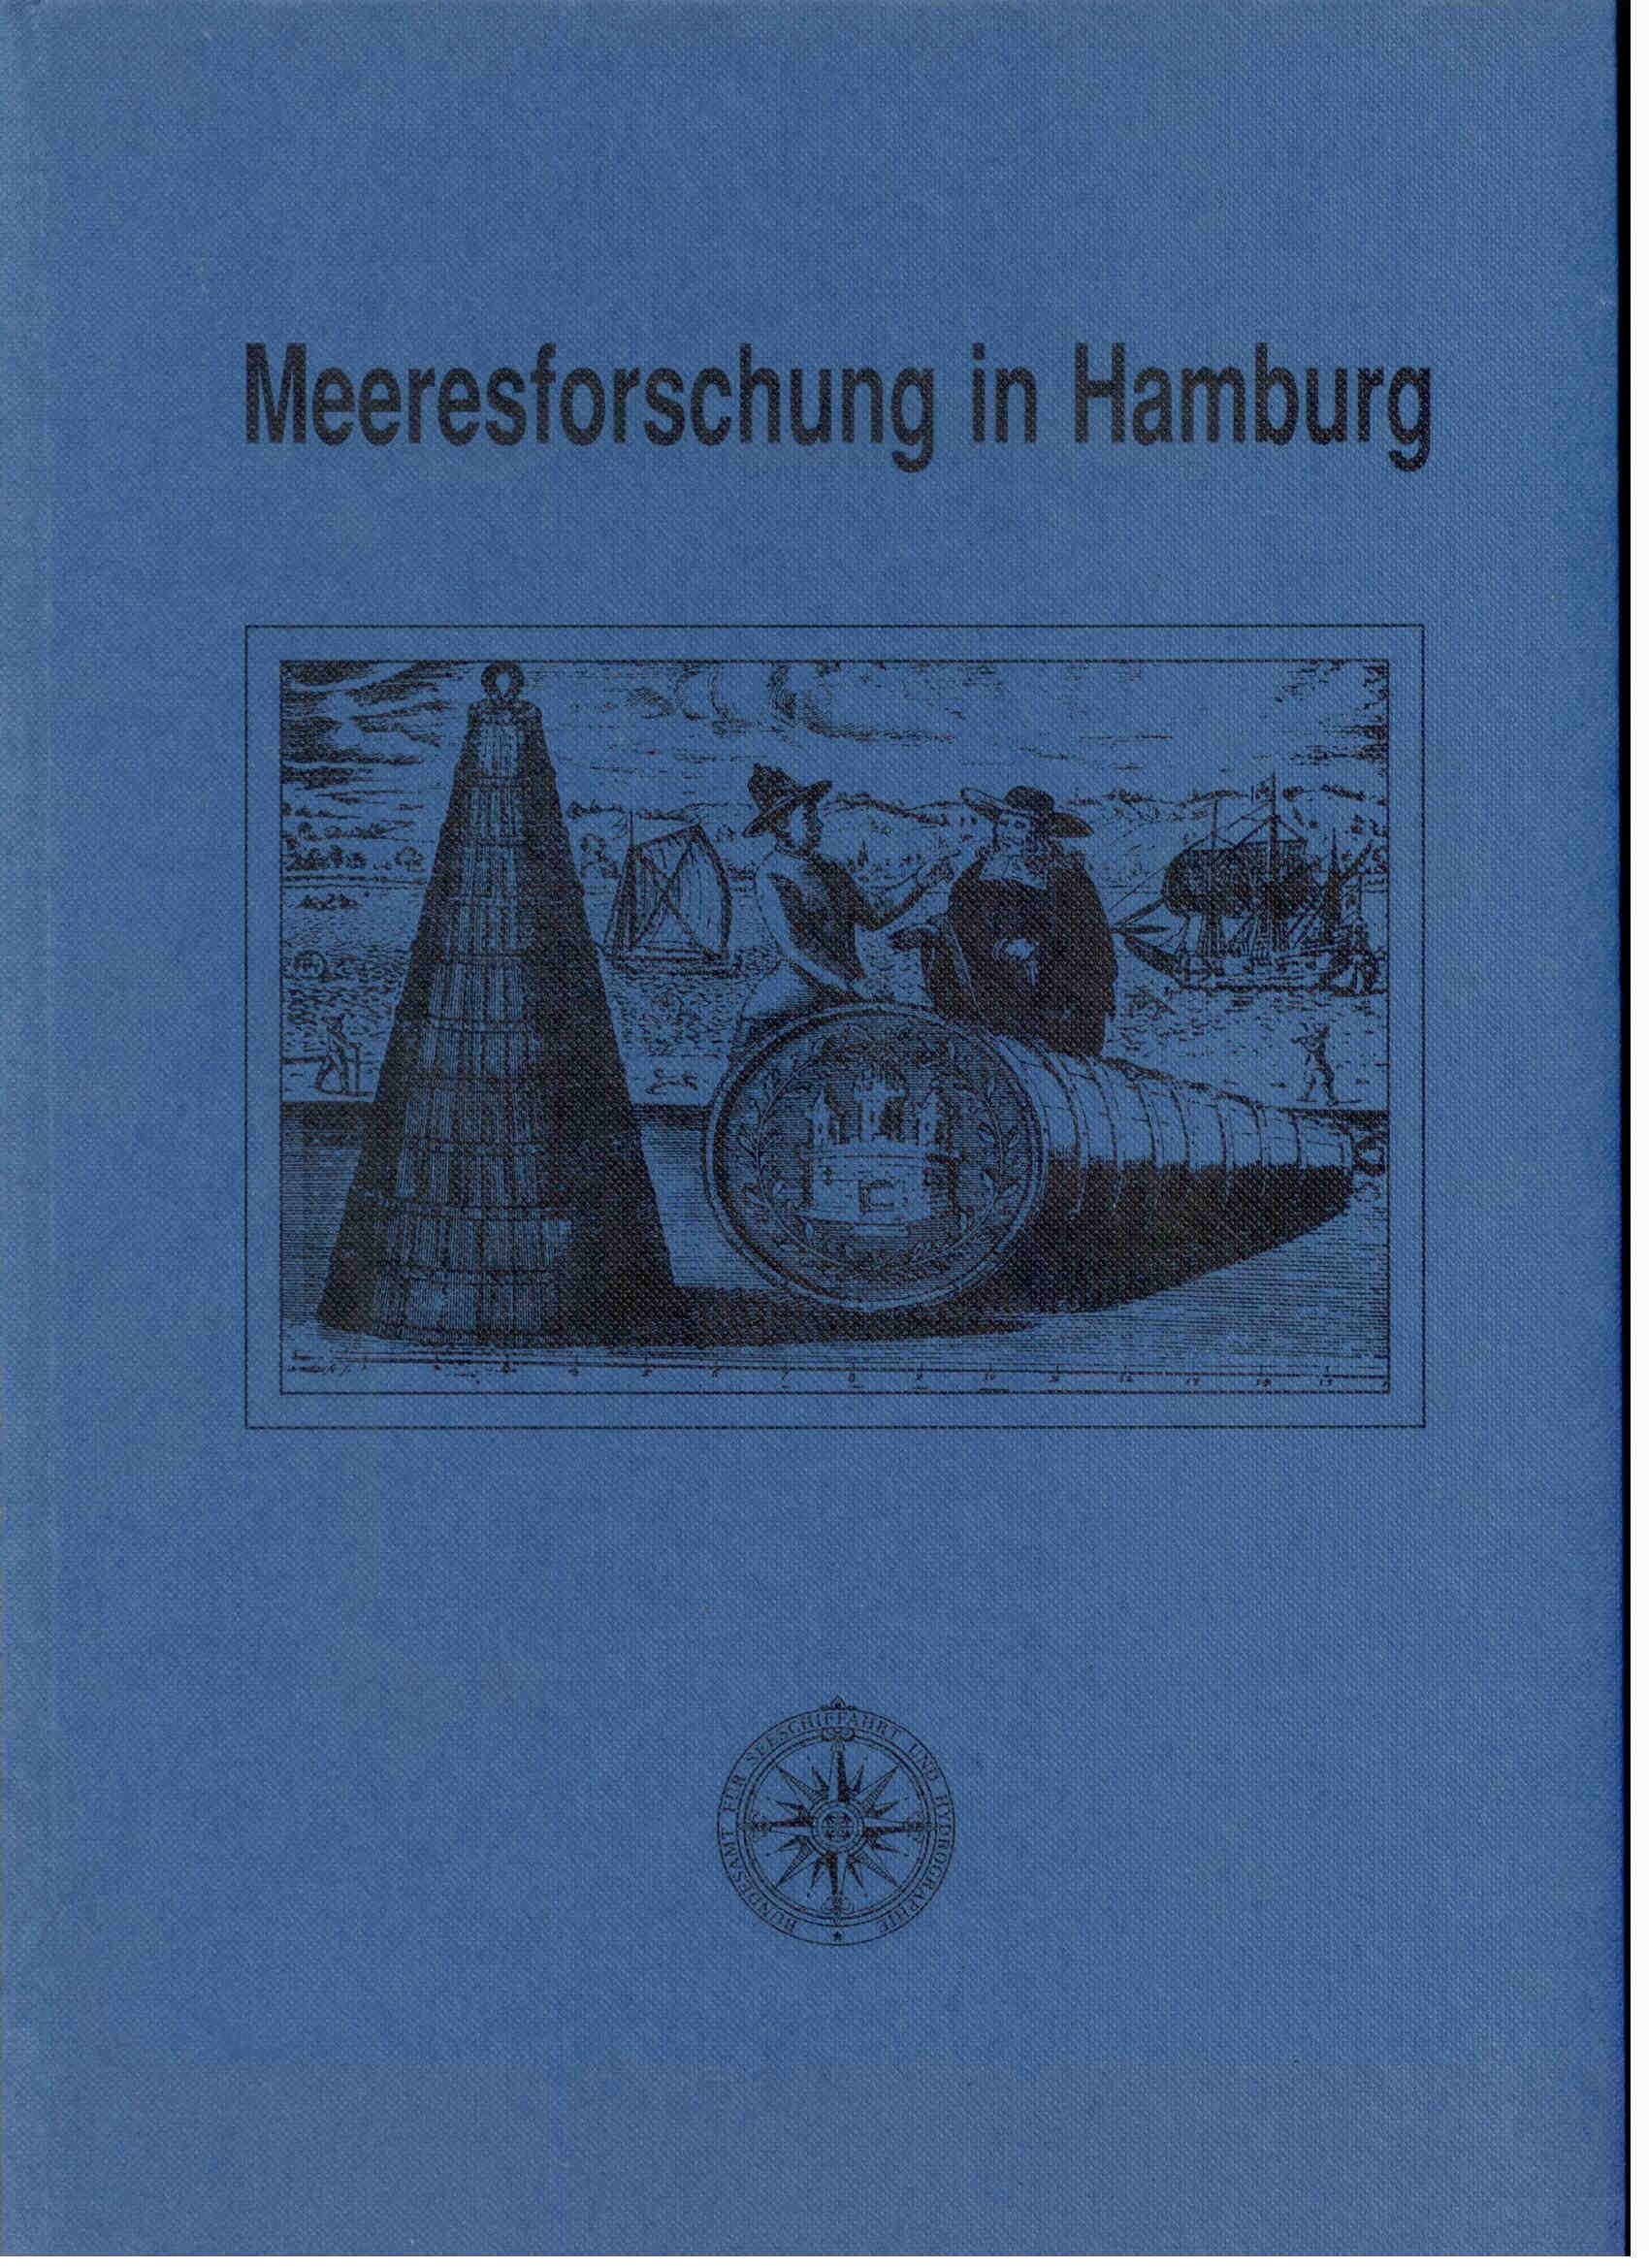 Wegner, G.: Meeresforschung in Hamburg. Von vorvorgestern bis übermorgen. 